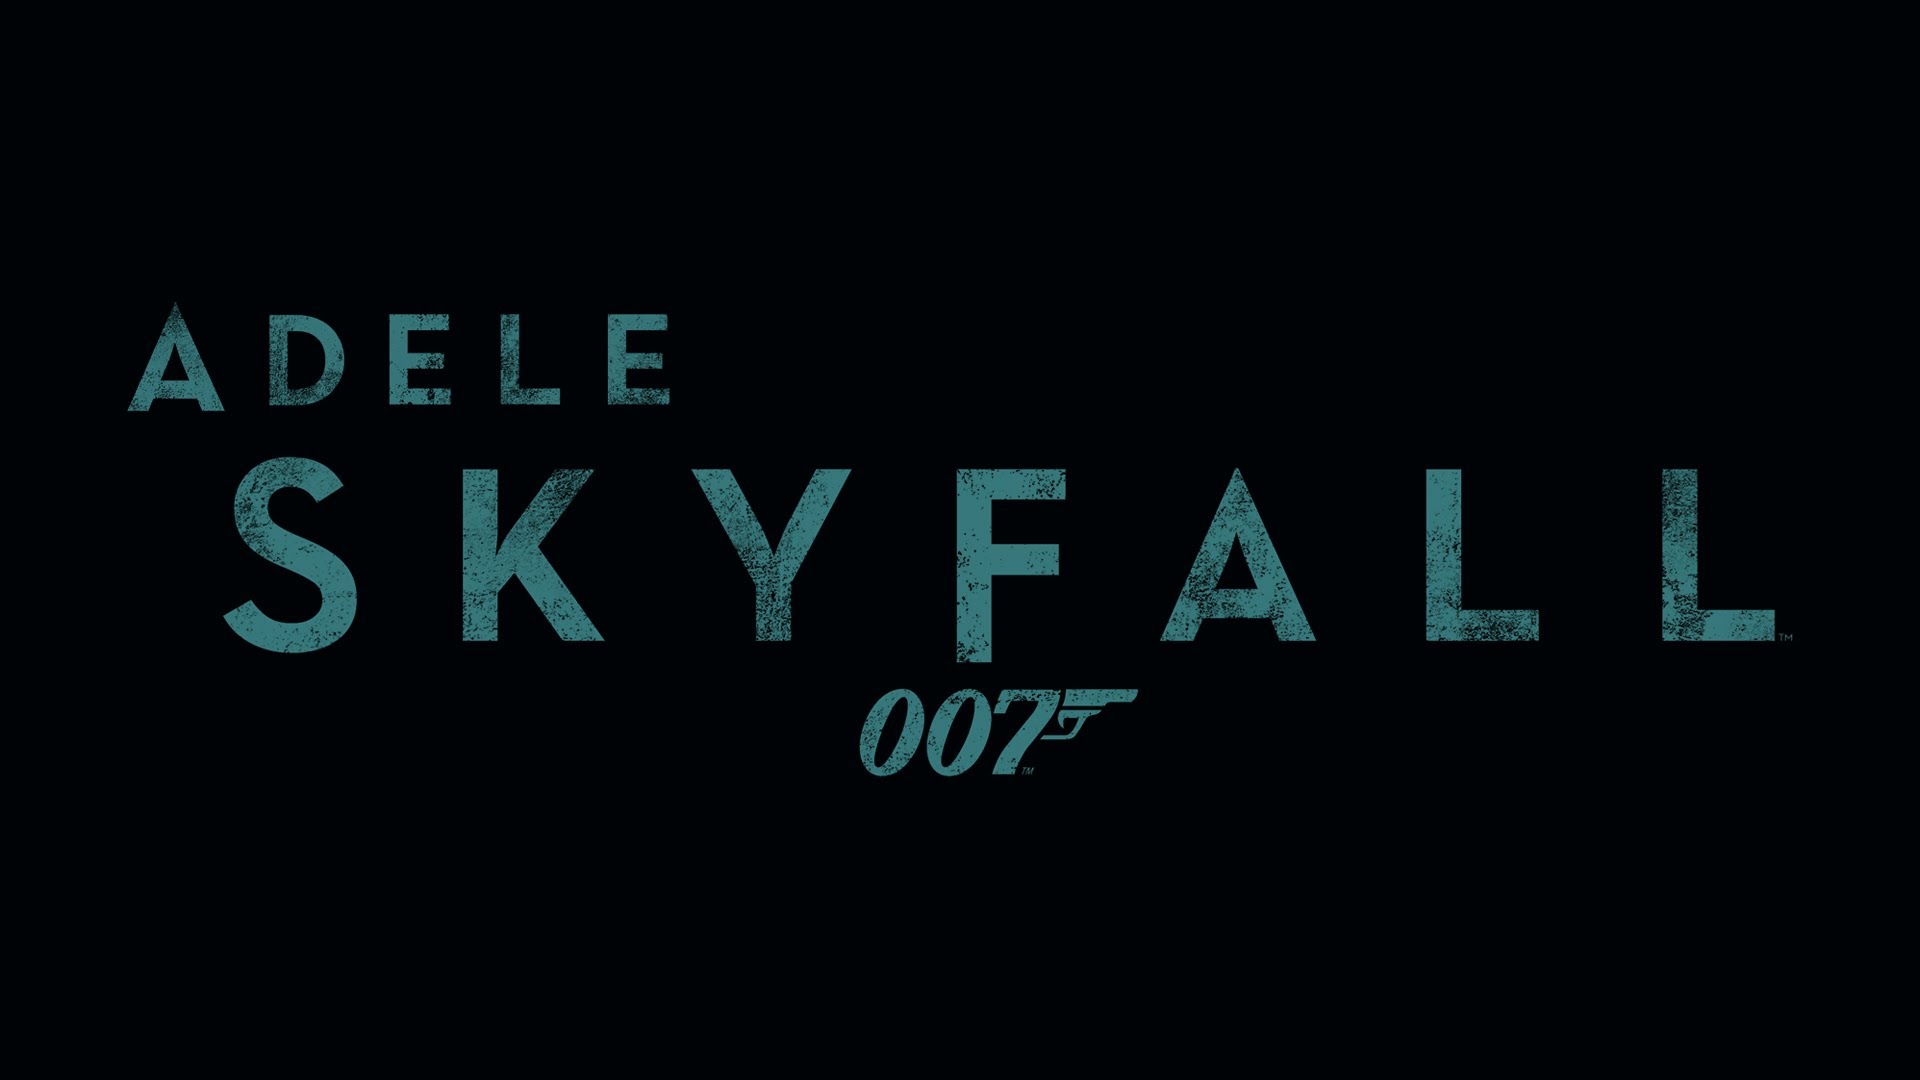 Adele - Skyfall - Adele Wallpaper (36244014) - Fanpop1920 x 1080